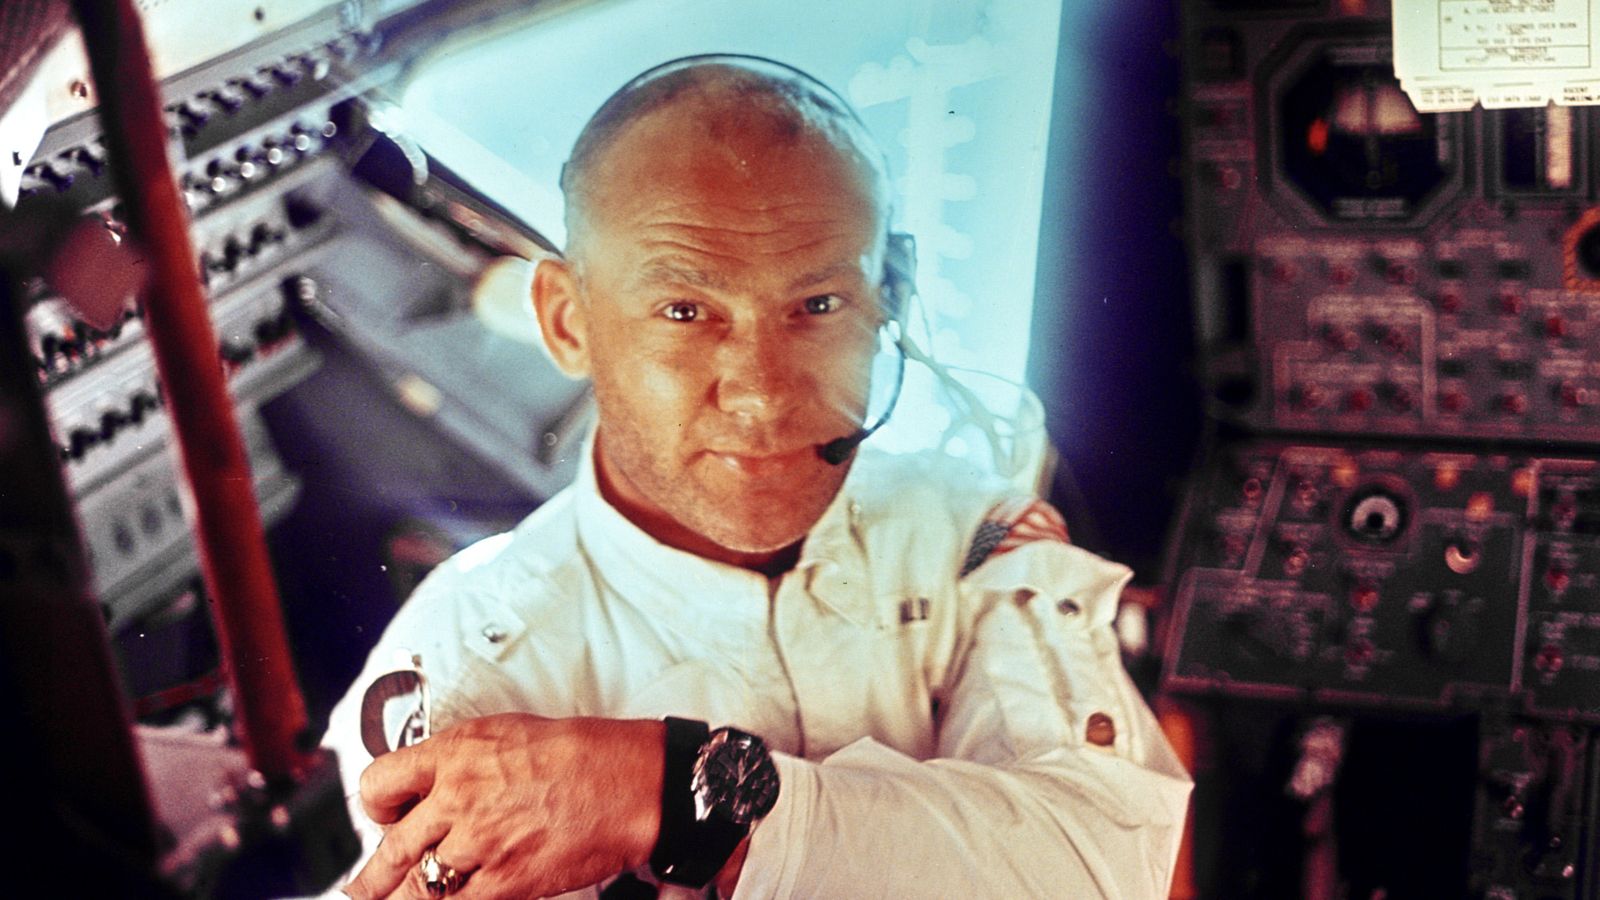 Foto: Buzz Aldrin, el piloto del módulo lunar